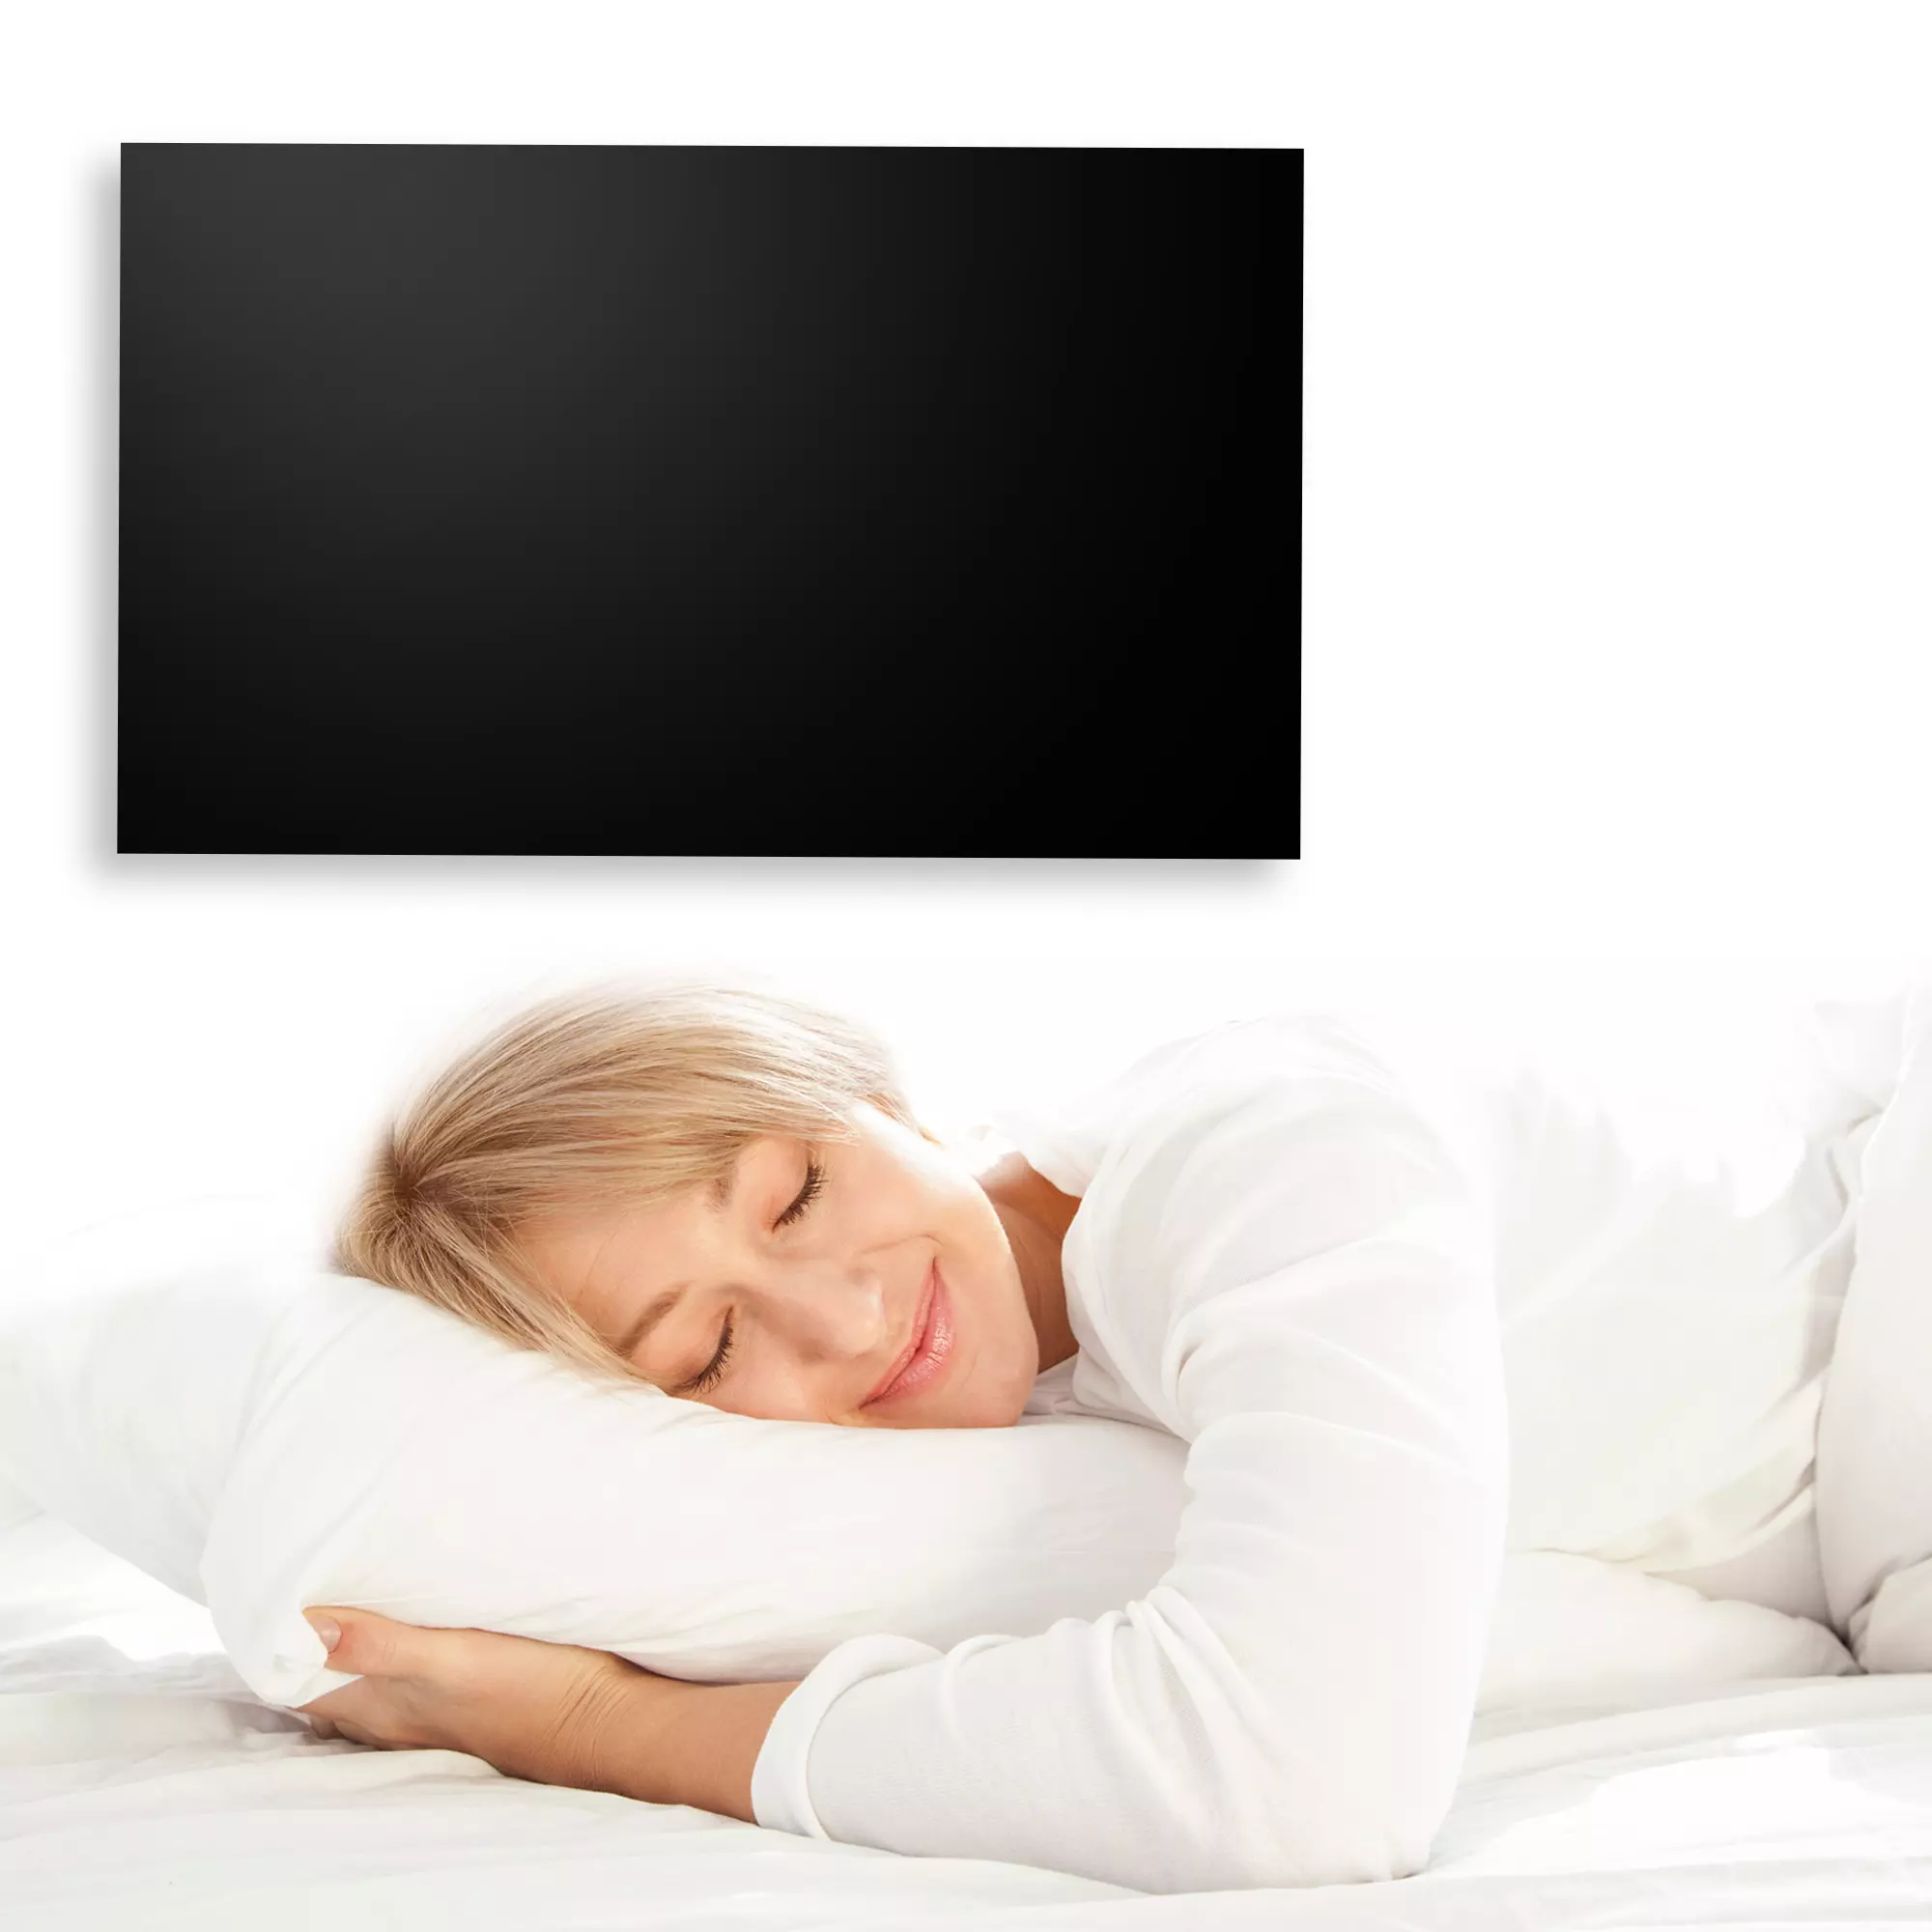 Heidenfeld Infrarotheizung in Schwarz an Schlafzimmerwand, Frau schläft lächelnd im Bett